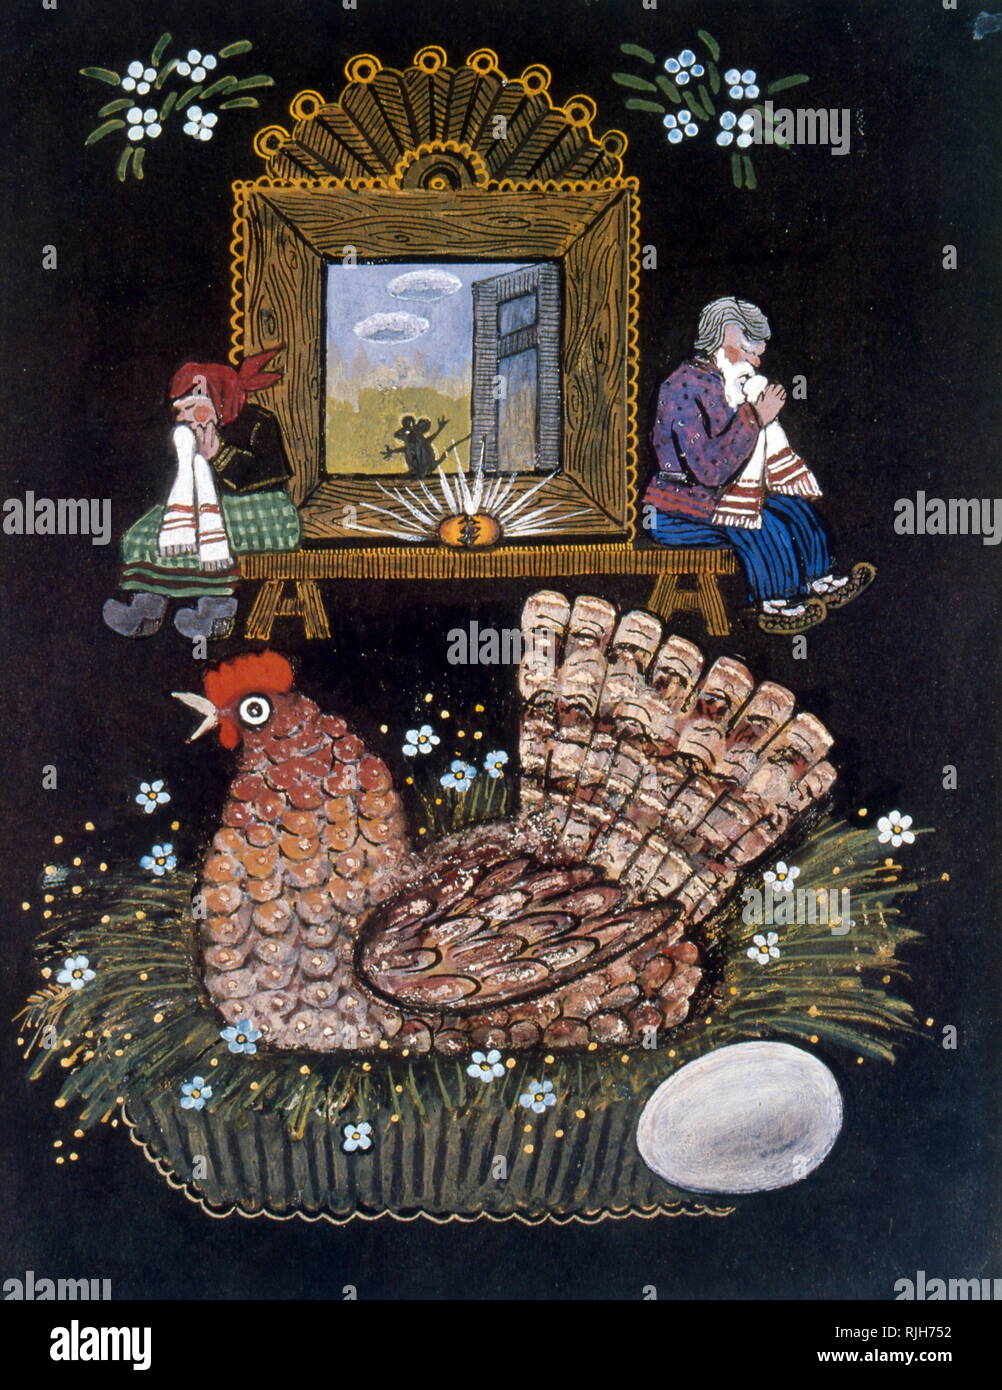 La poule et l'œuf d'or. Illustration pour un conte russe populaire. En 1964, Iouri Vasnetsov (1900-1973), graphiste et peintre soviétique. Son travail était étroitement liée avec les traditions de l'art populaire russe Banque D'Images